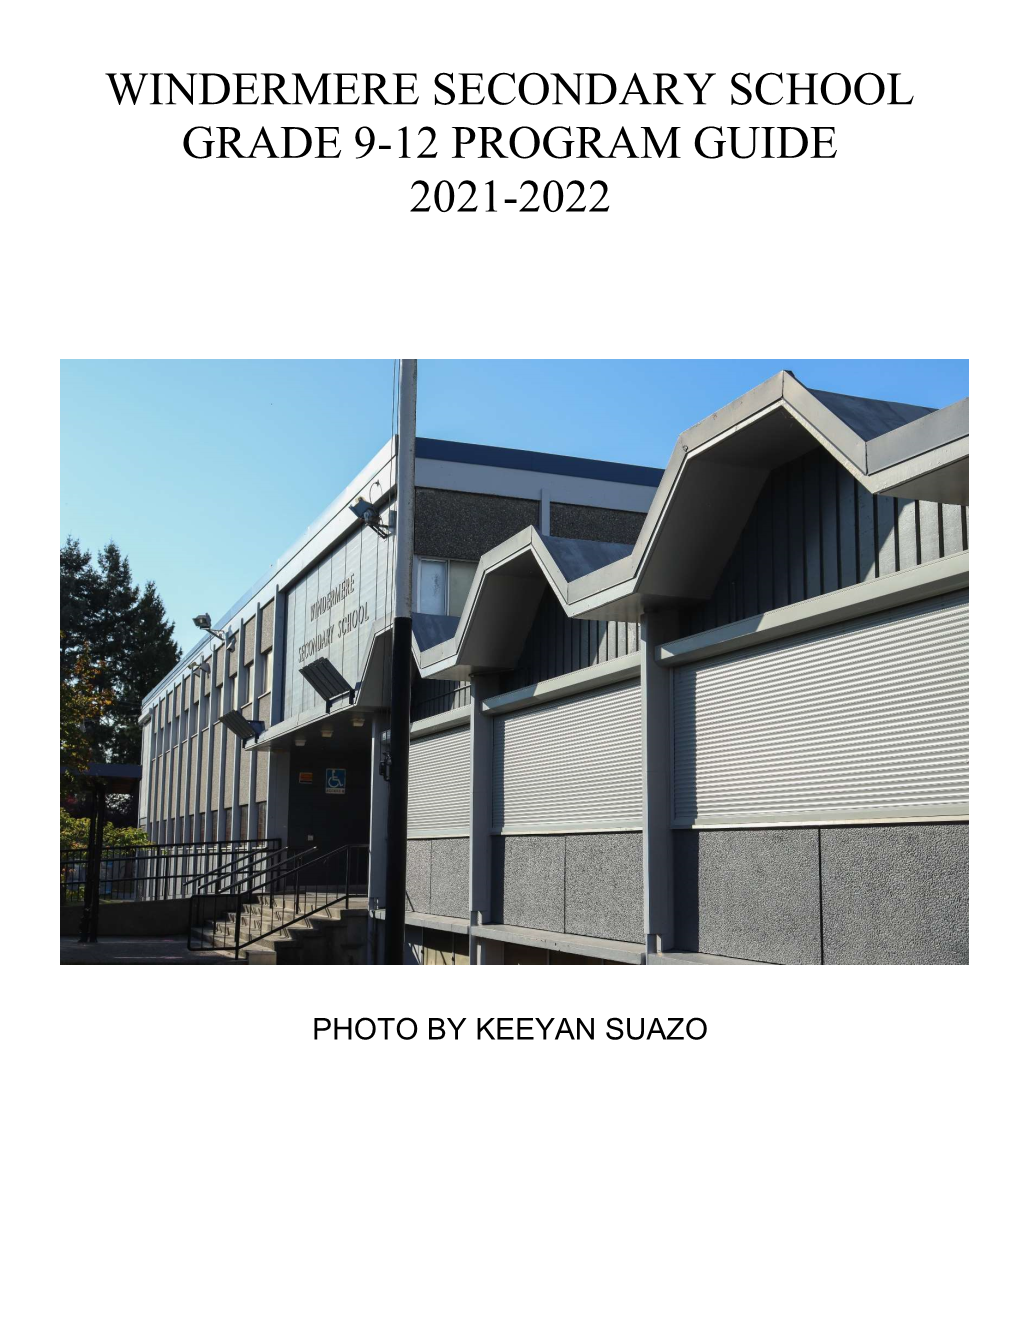 Grades 9-12 Program Planning Guide 2021-2022